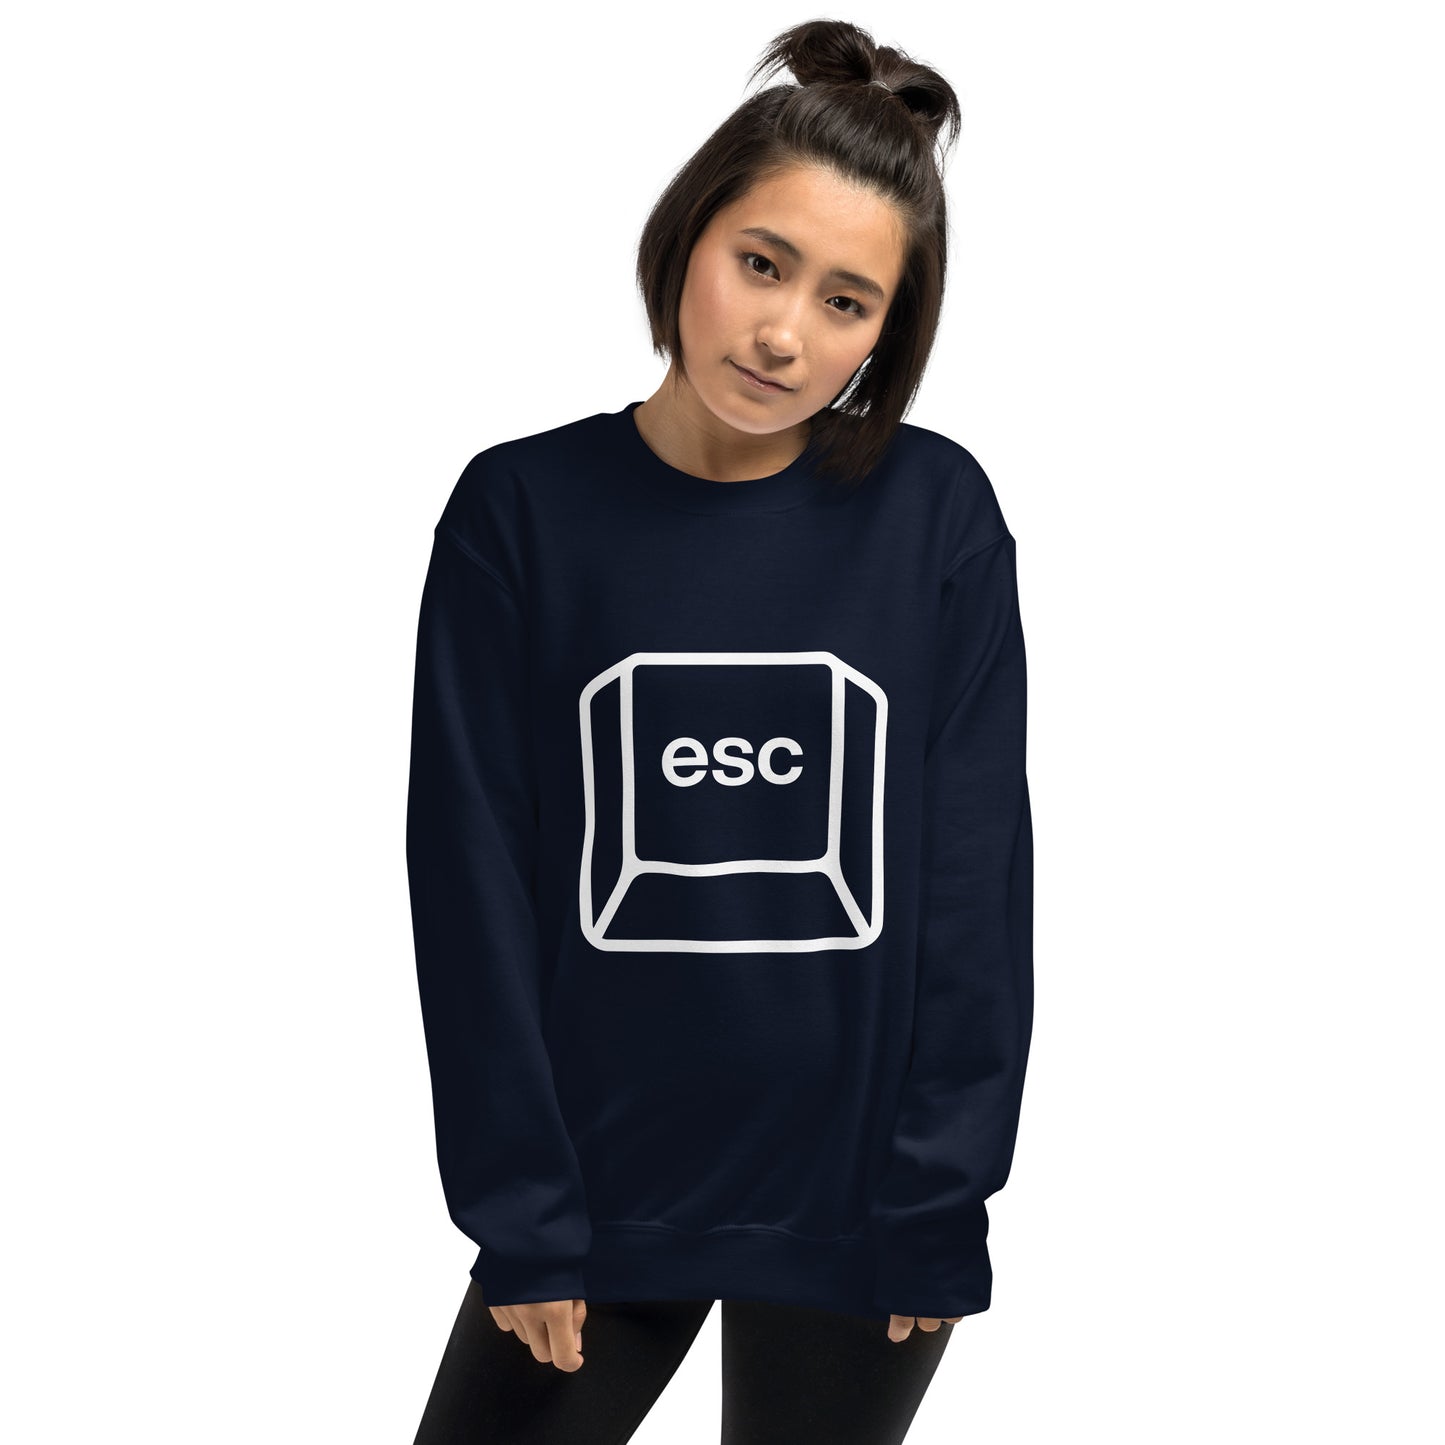 "ESC" Sweatshirt